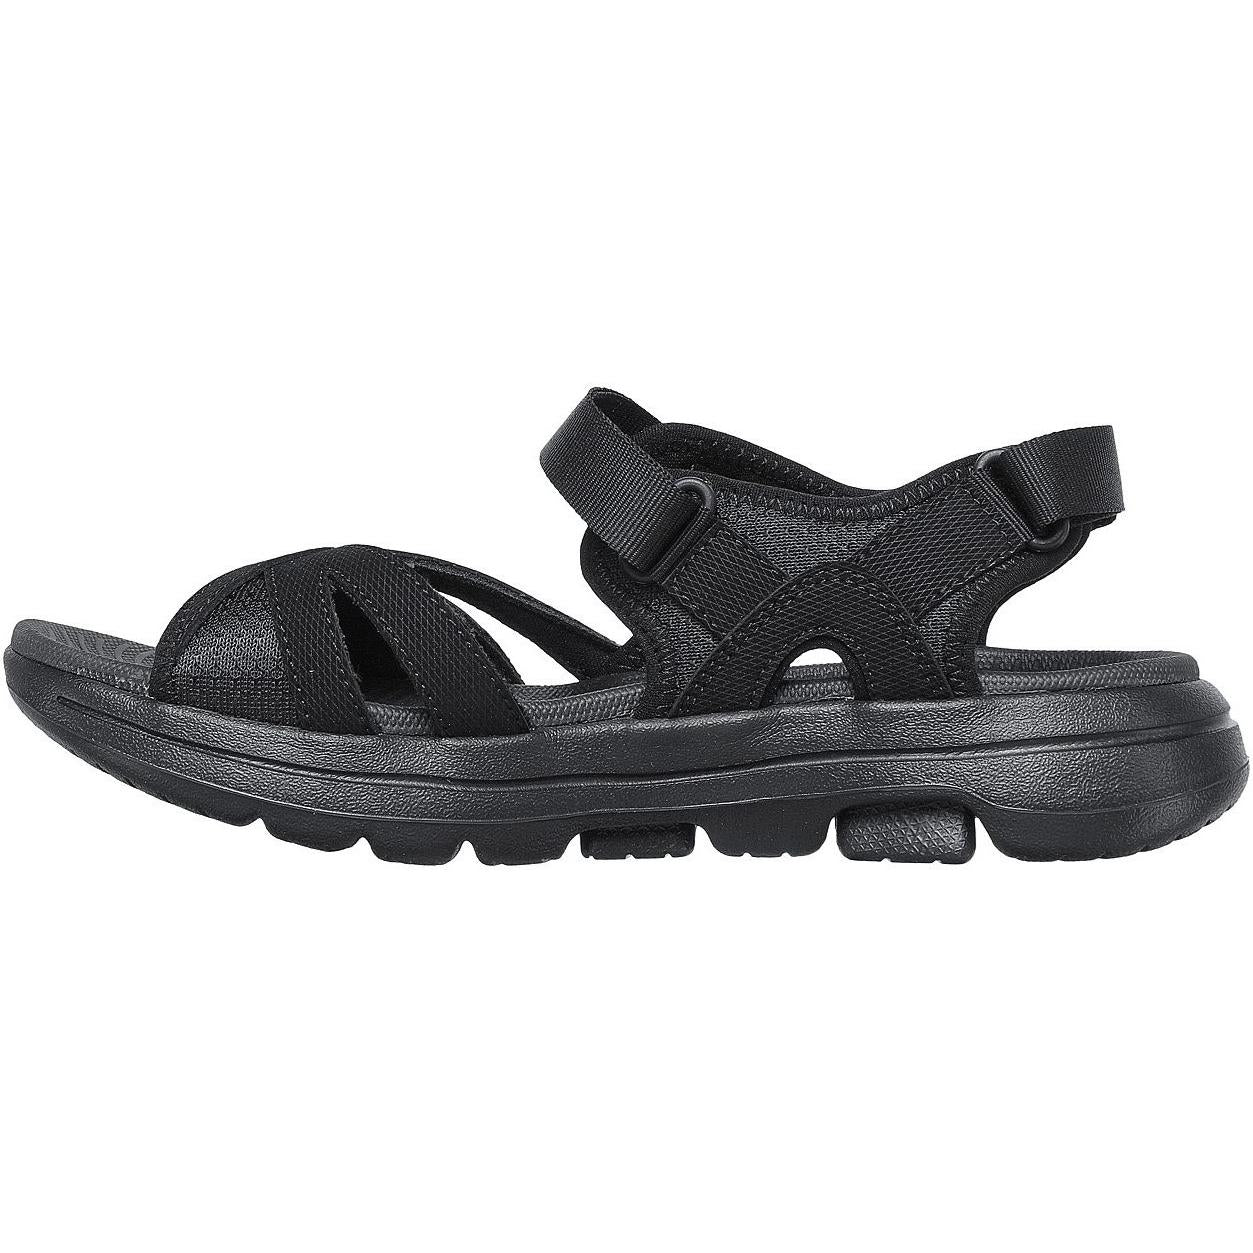 Skechers Go Walk 5 Restored Summer Sandal